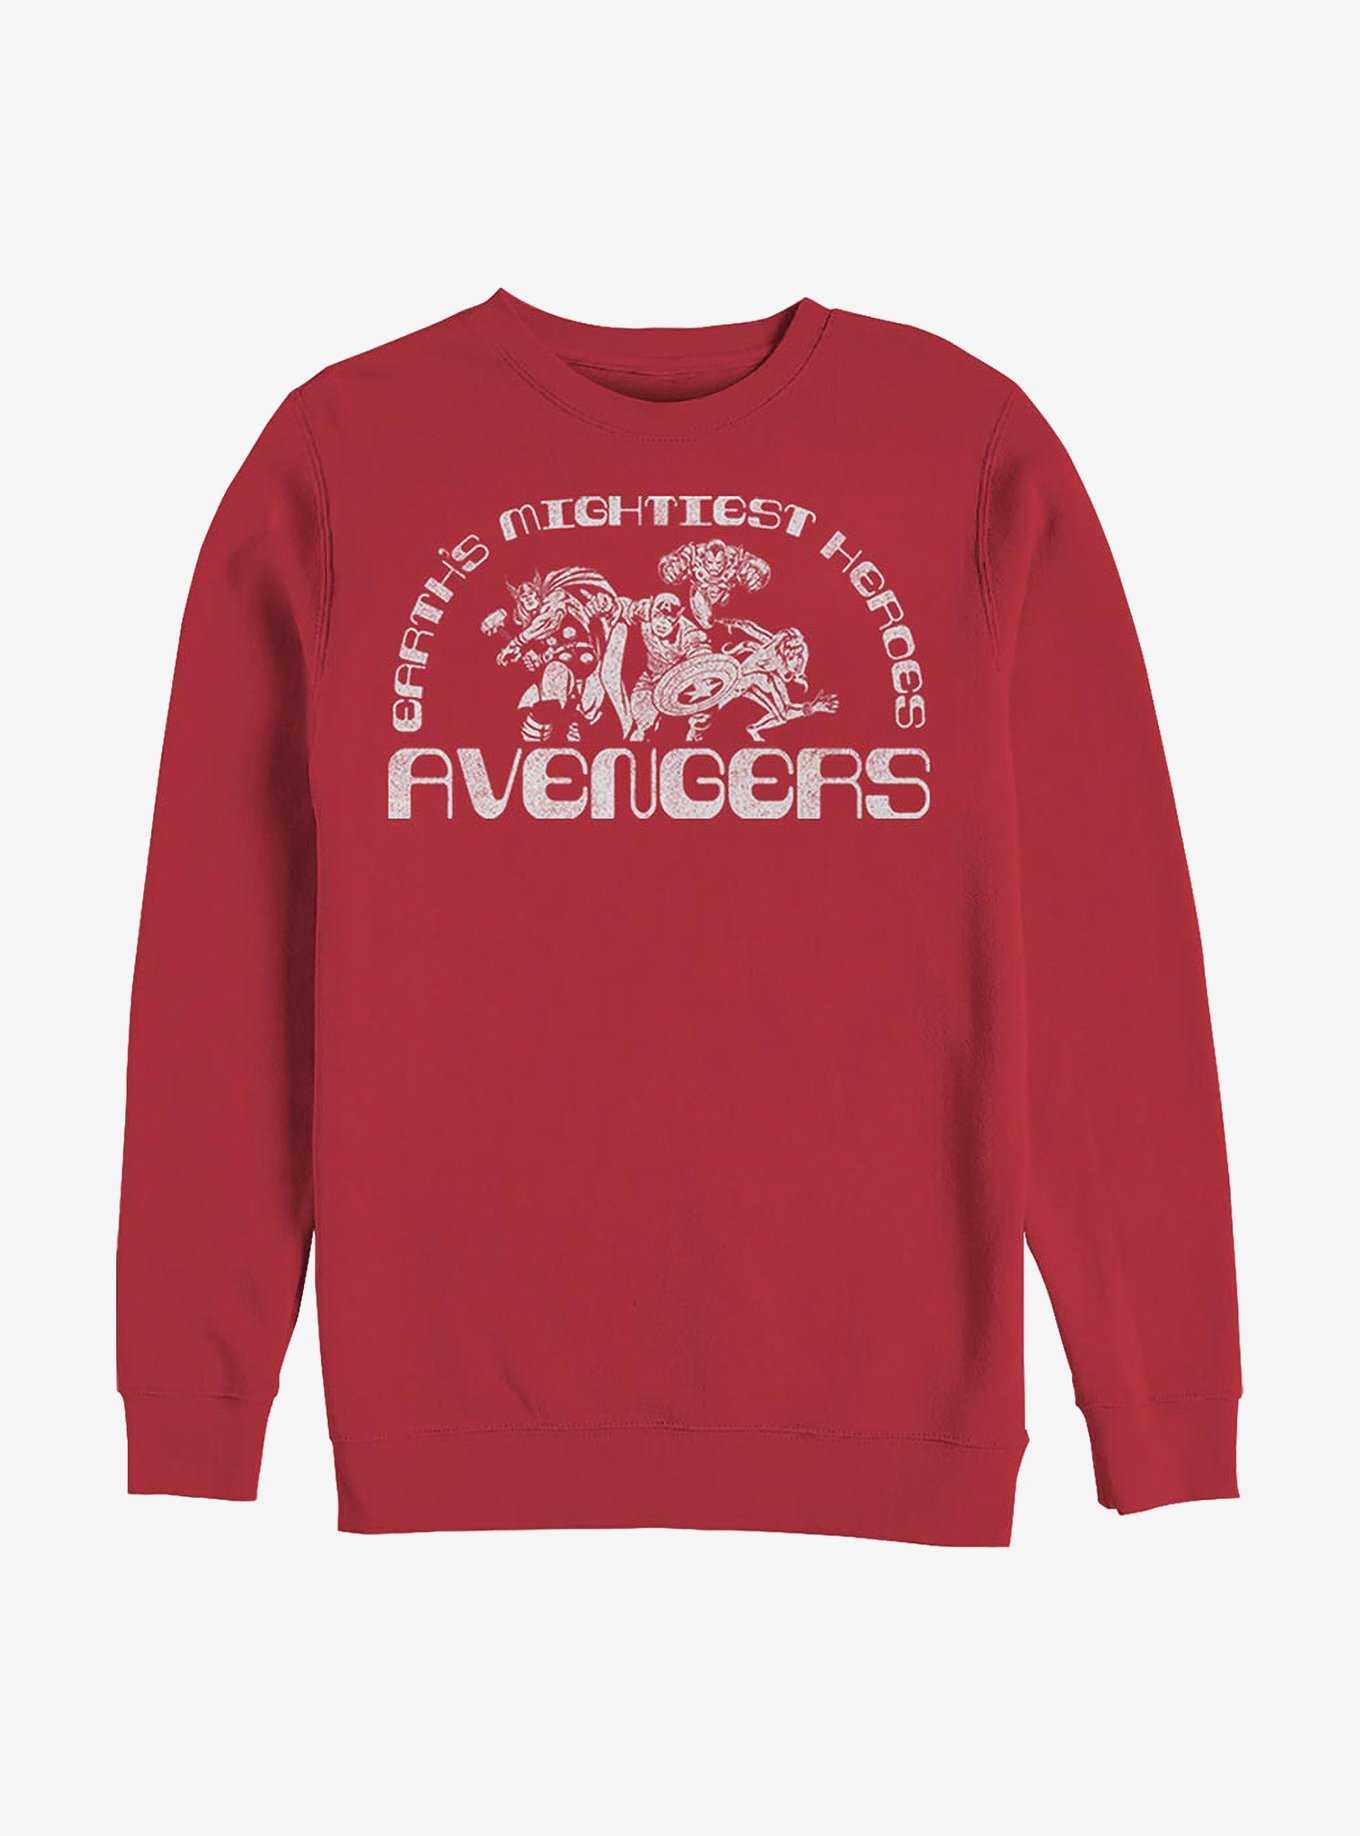 Marvel Avengers Mightiest Heroes Crew Sweatshirt, , hi-res